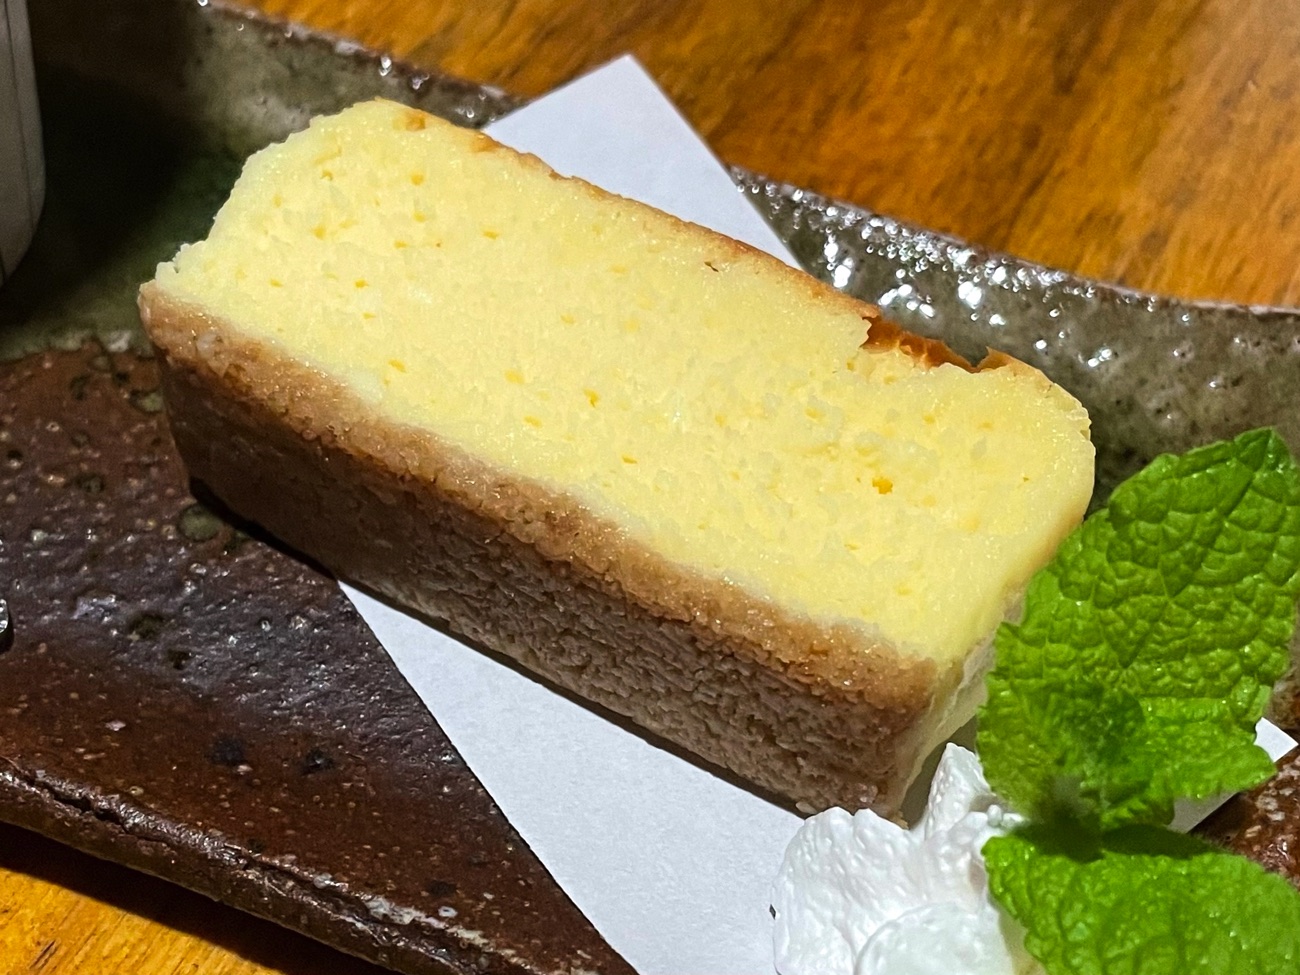 「のぼり窯カフェ」で食べたチーズケーキ